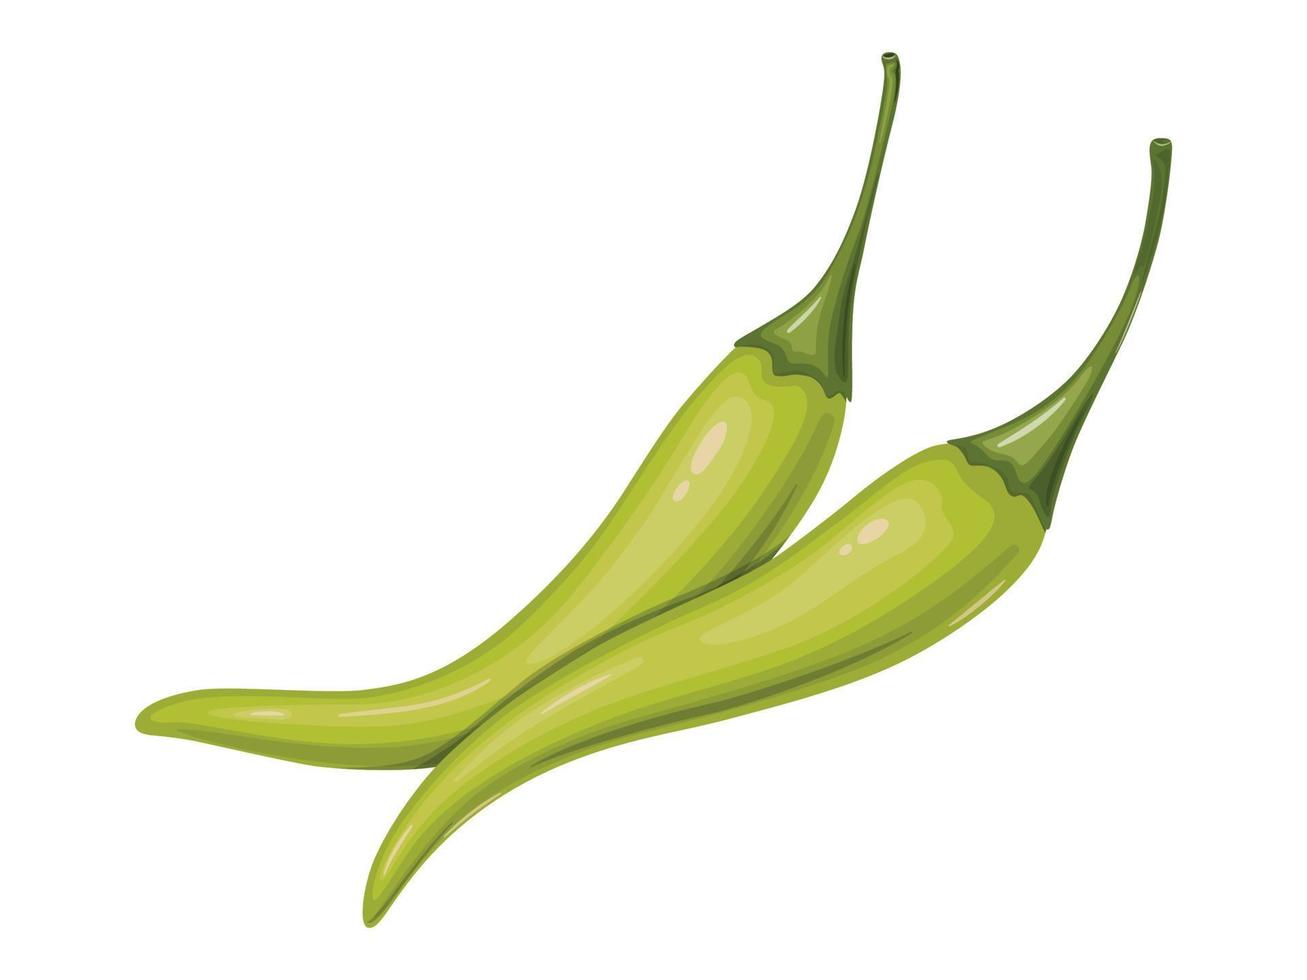 groene hete chili peper. Mexicaans traditioneel eten. vector